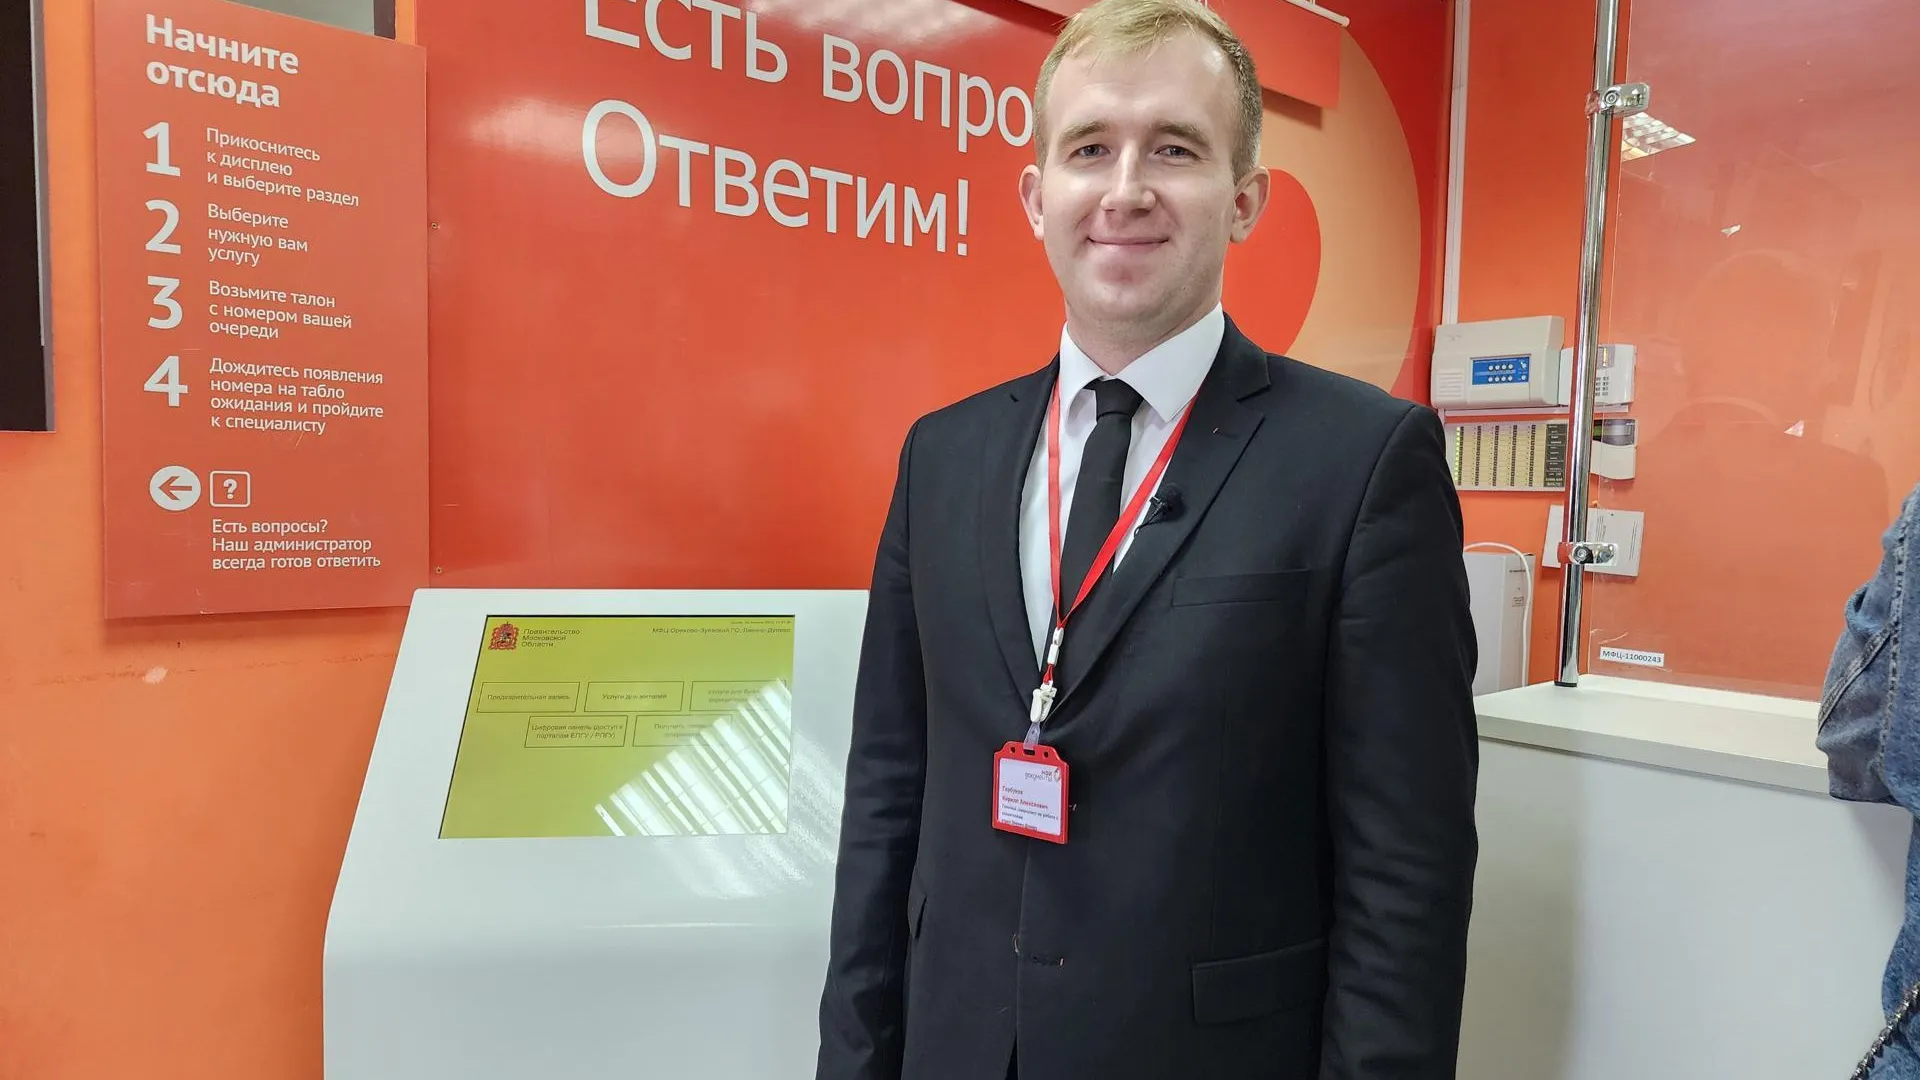 Кирилл Горбунов стал лучшим сотрудником МФЦ в Московской области